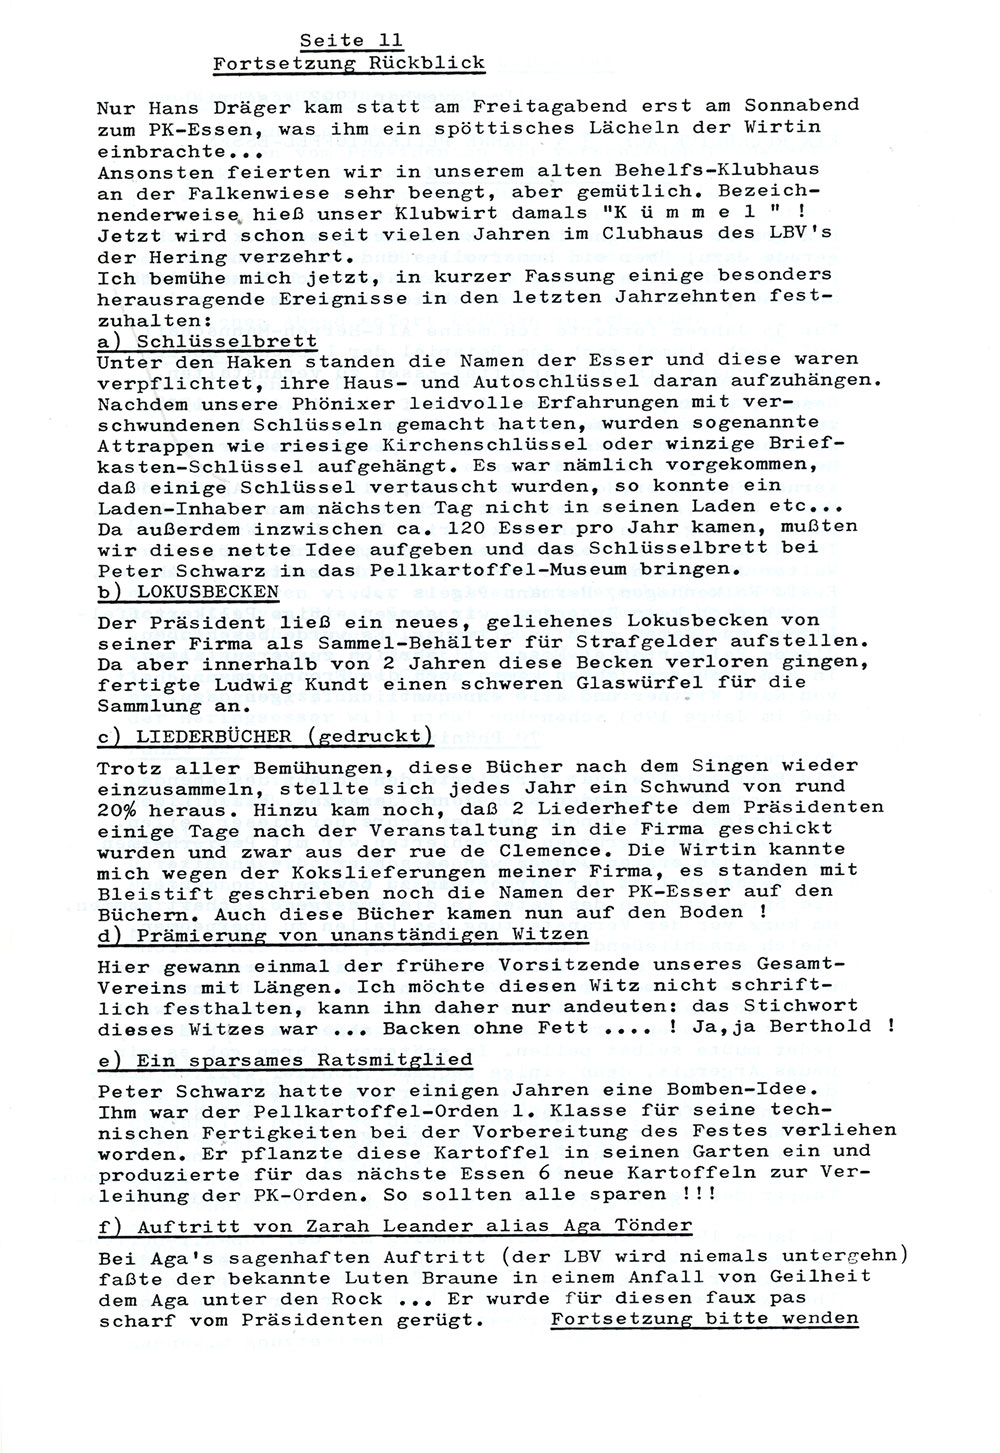 Sonderheft Pellkartoffelzeitung 35 Jahre Pellkartoffelessen 06-02-1993. Eine Festschrift.